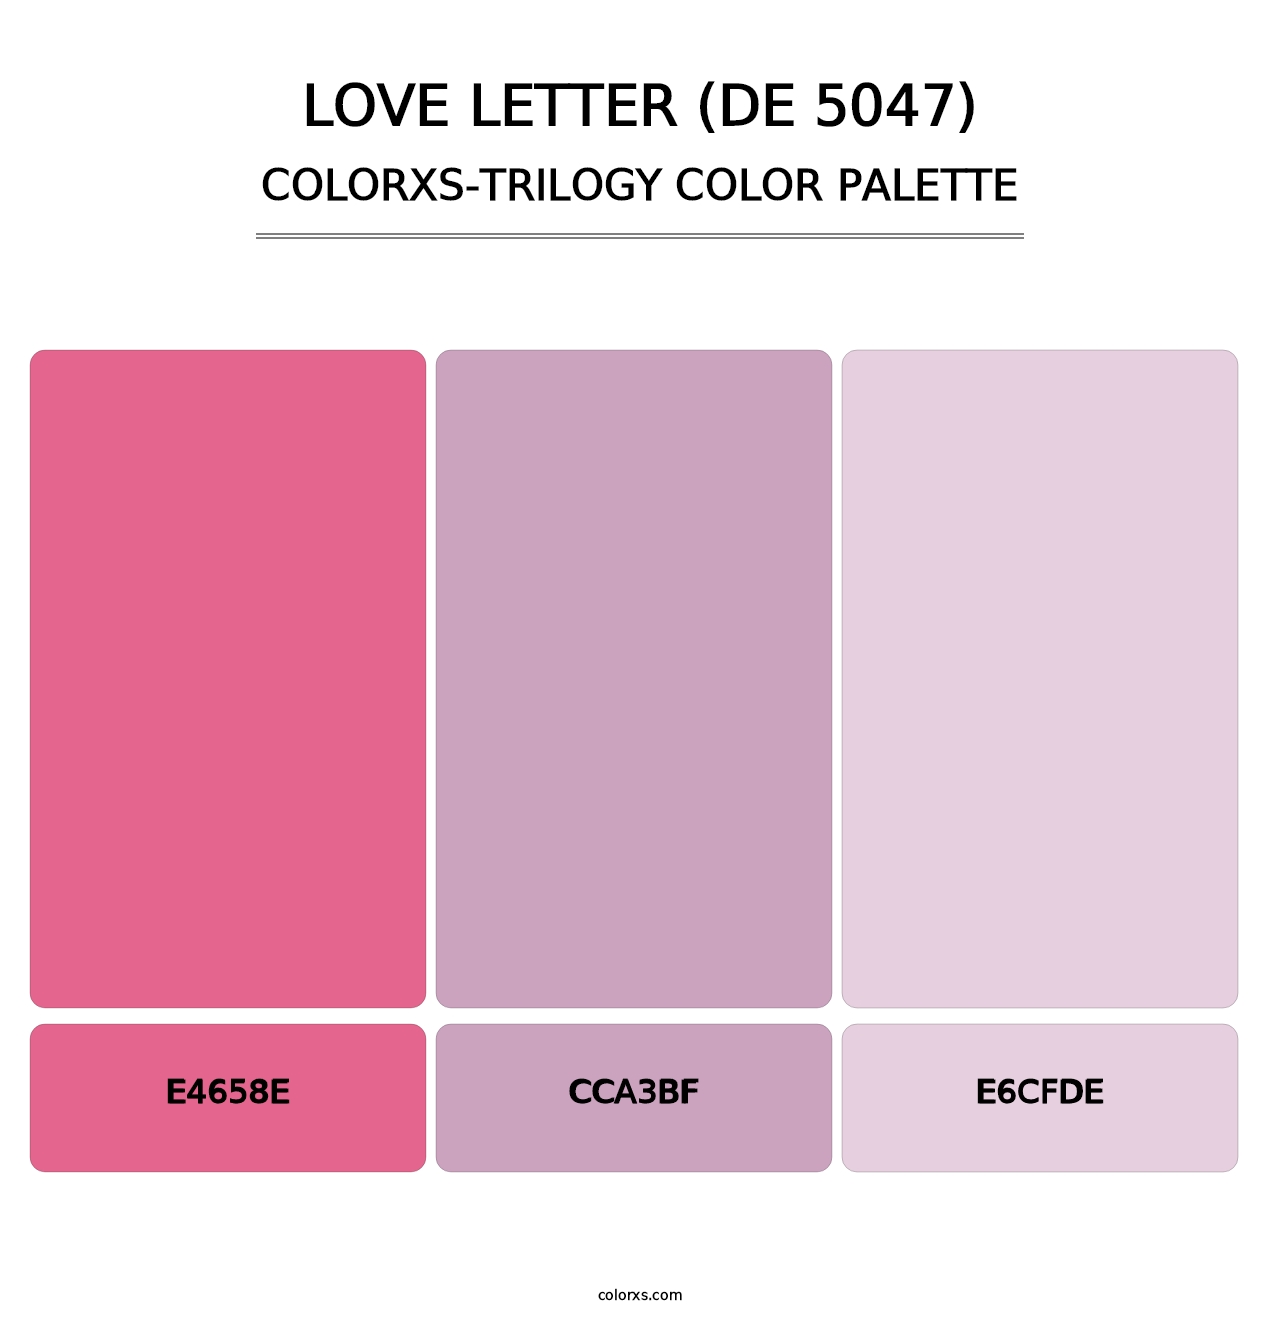 Love Letter (DE 5047) - Colorxs Trilogy Palette